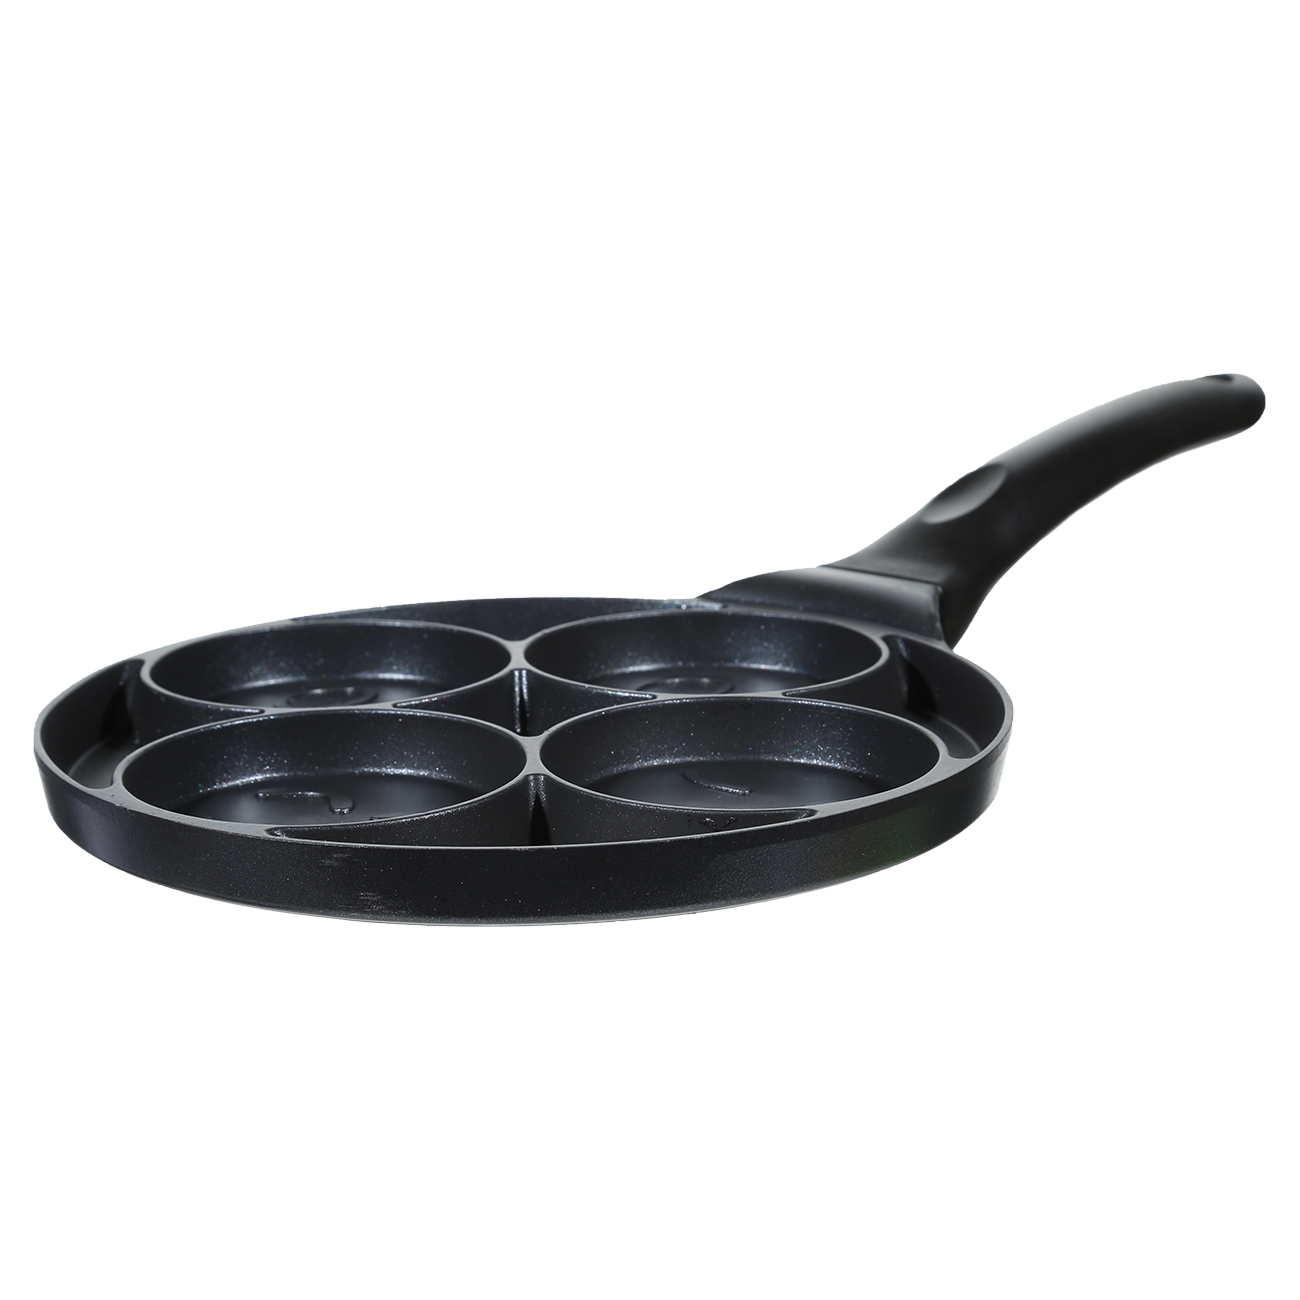 Egg and pancake pan, 21 cm, 4 otd, coated, aluminum, Smile, Action изображение № 2